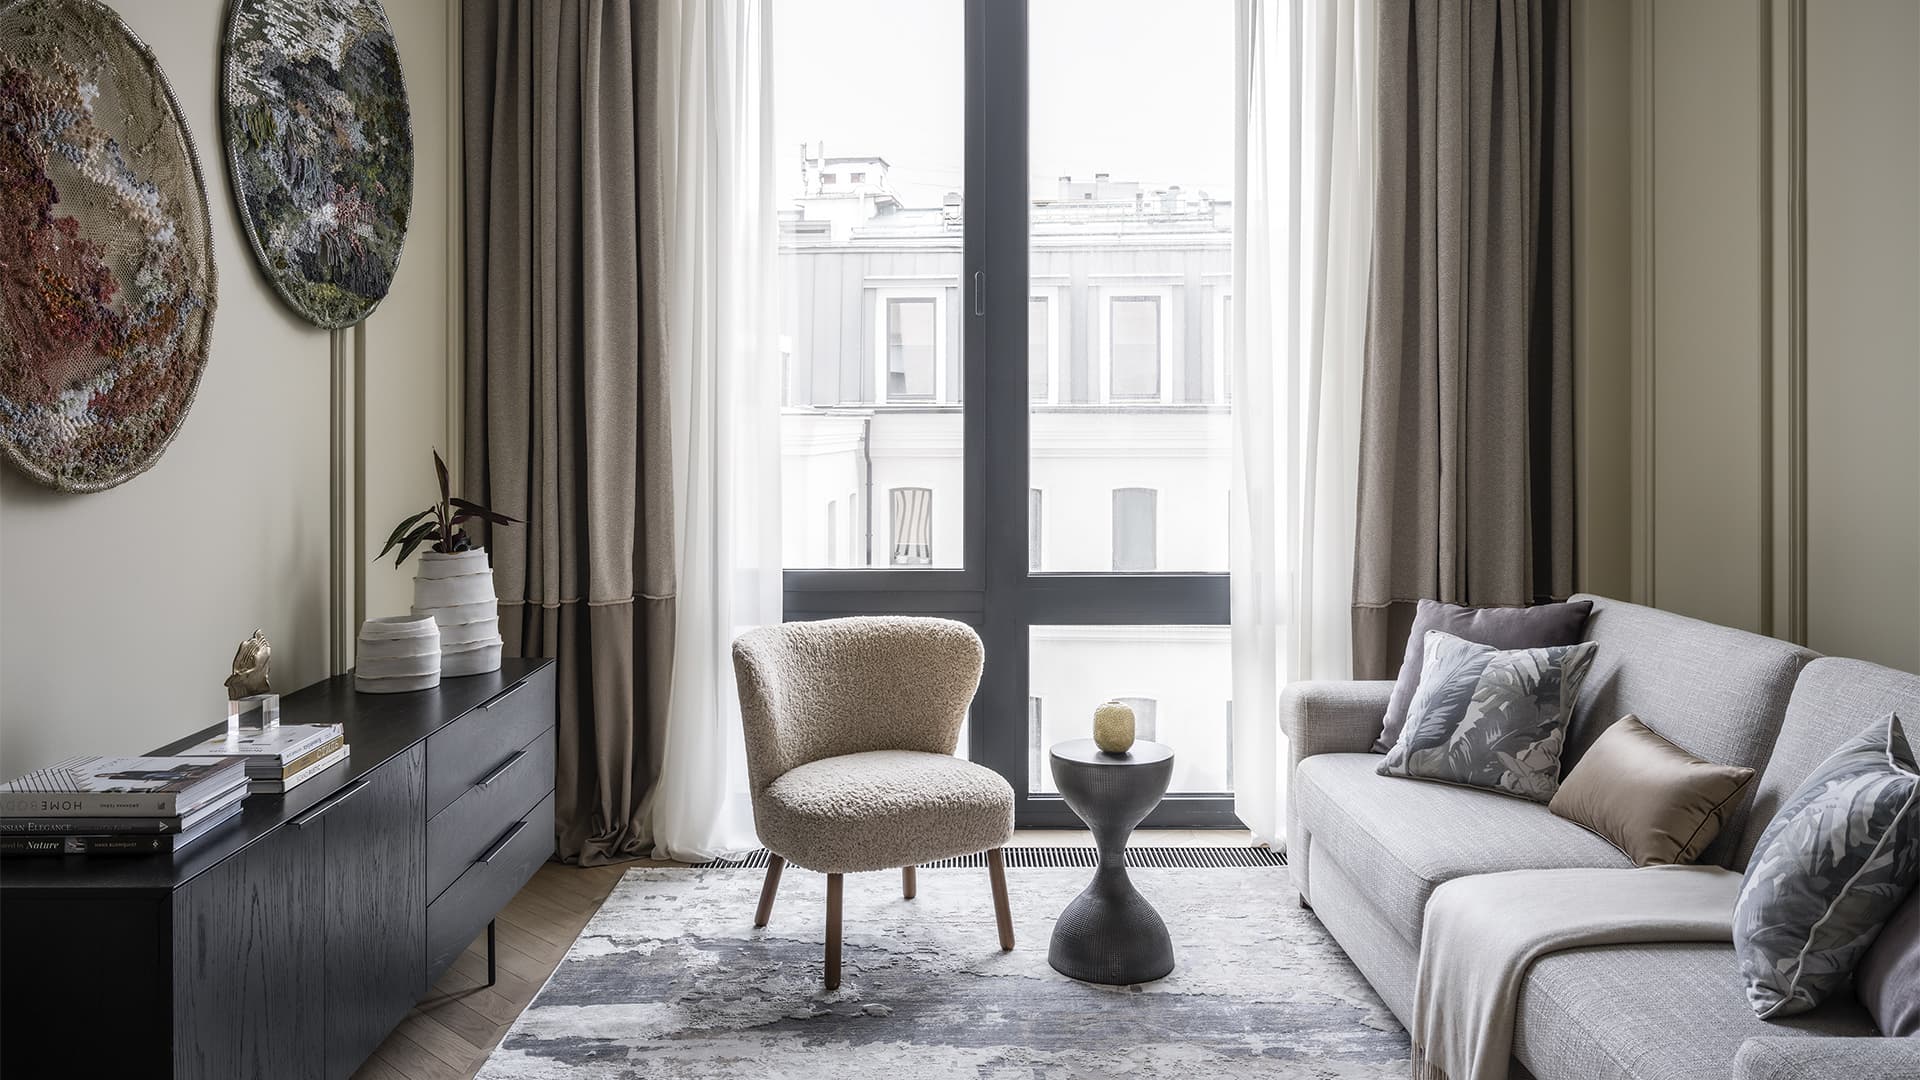 Интерьер квартиры для отдыха в классическом стиле – проект Дарьи Сабитовой